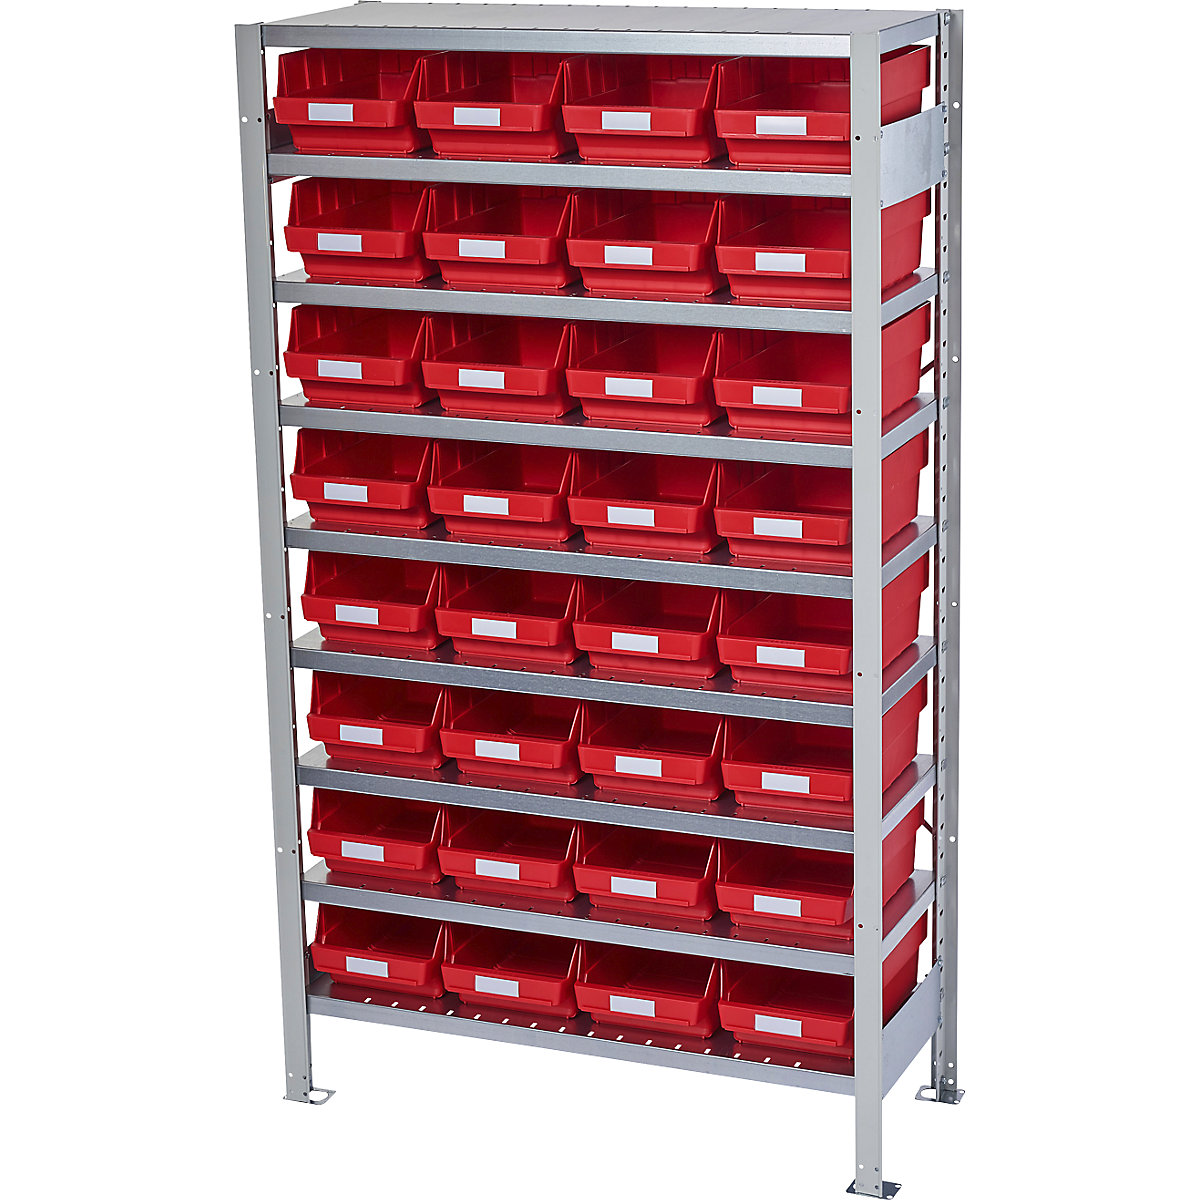 Zásuvný regál s regálovými přepravkami – STEMO, výška regálu 1790 mm, základní regál, hloubka 400 mm, 32 přepravek červených-6